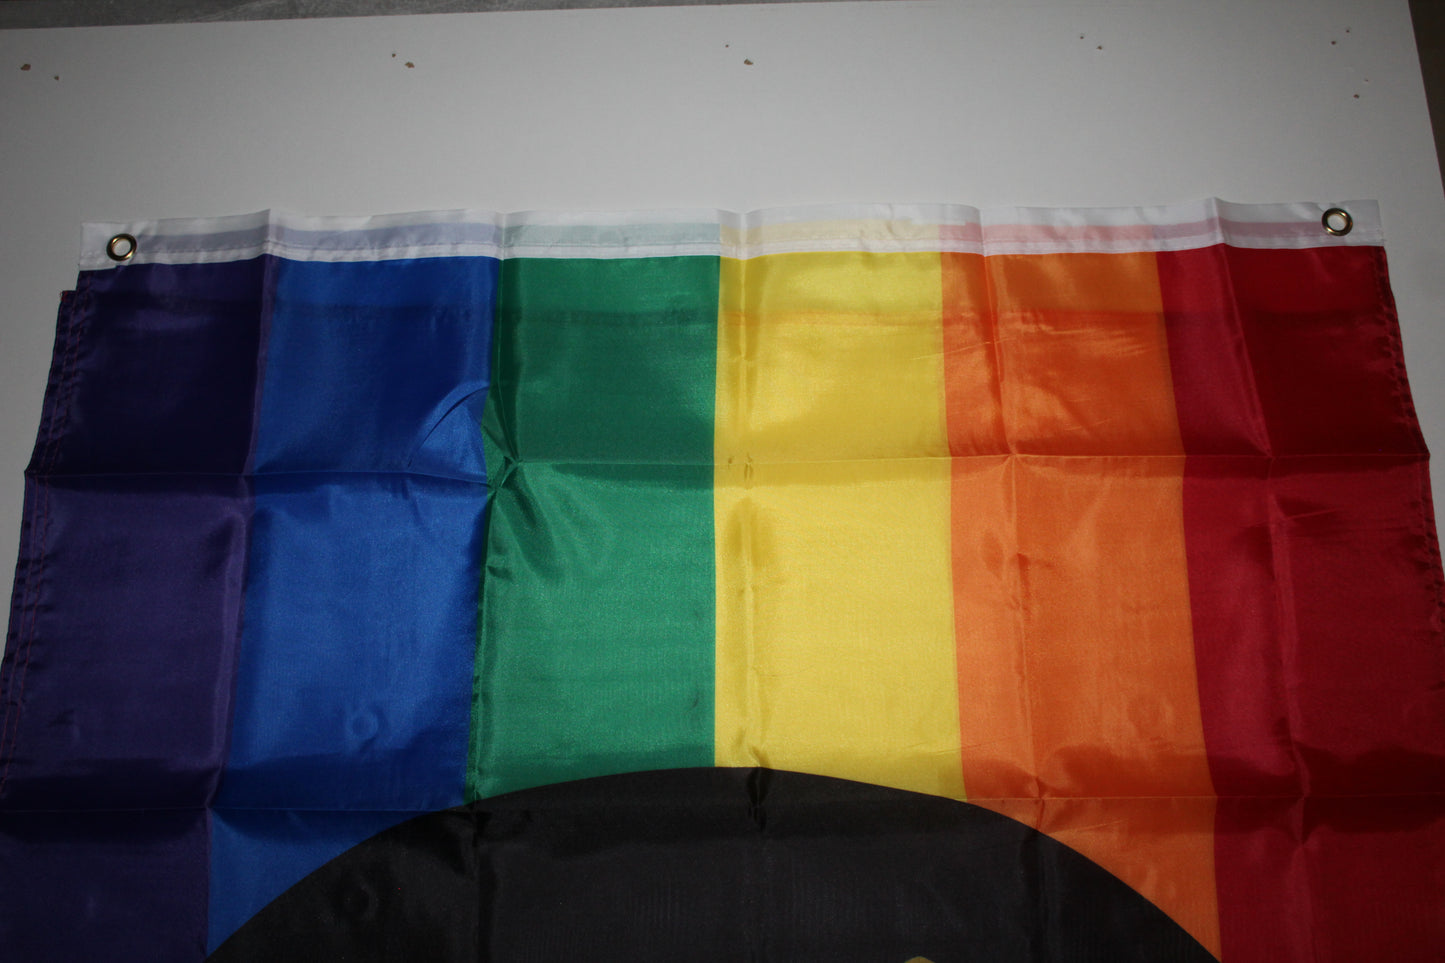 Regenbogen POC Power / People of Color Pride Flag